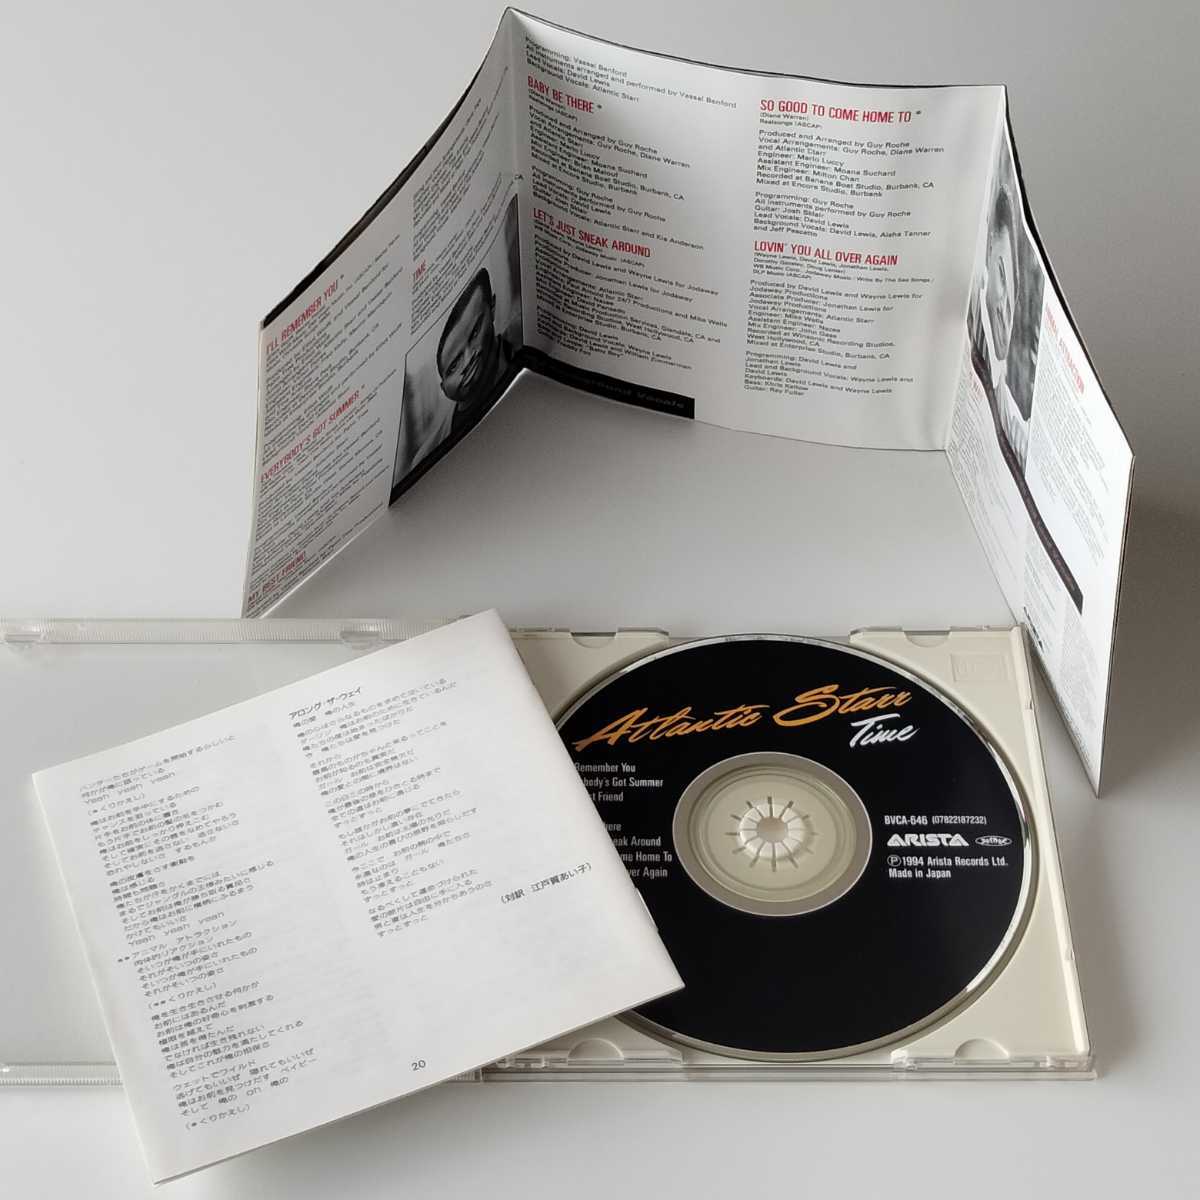 【折り込みピンナップジャケット国内盤CD】ATLANTIC RTARR / TIME (BVCA-646) アトランティック・スター / タイム _画像3